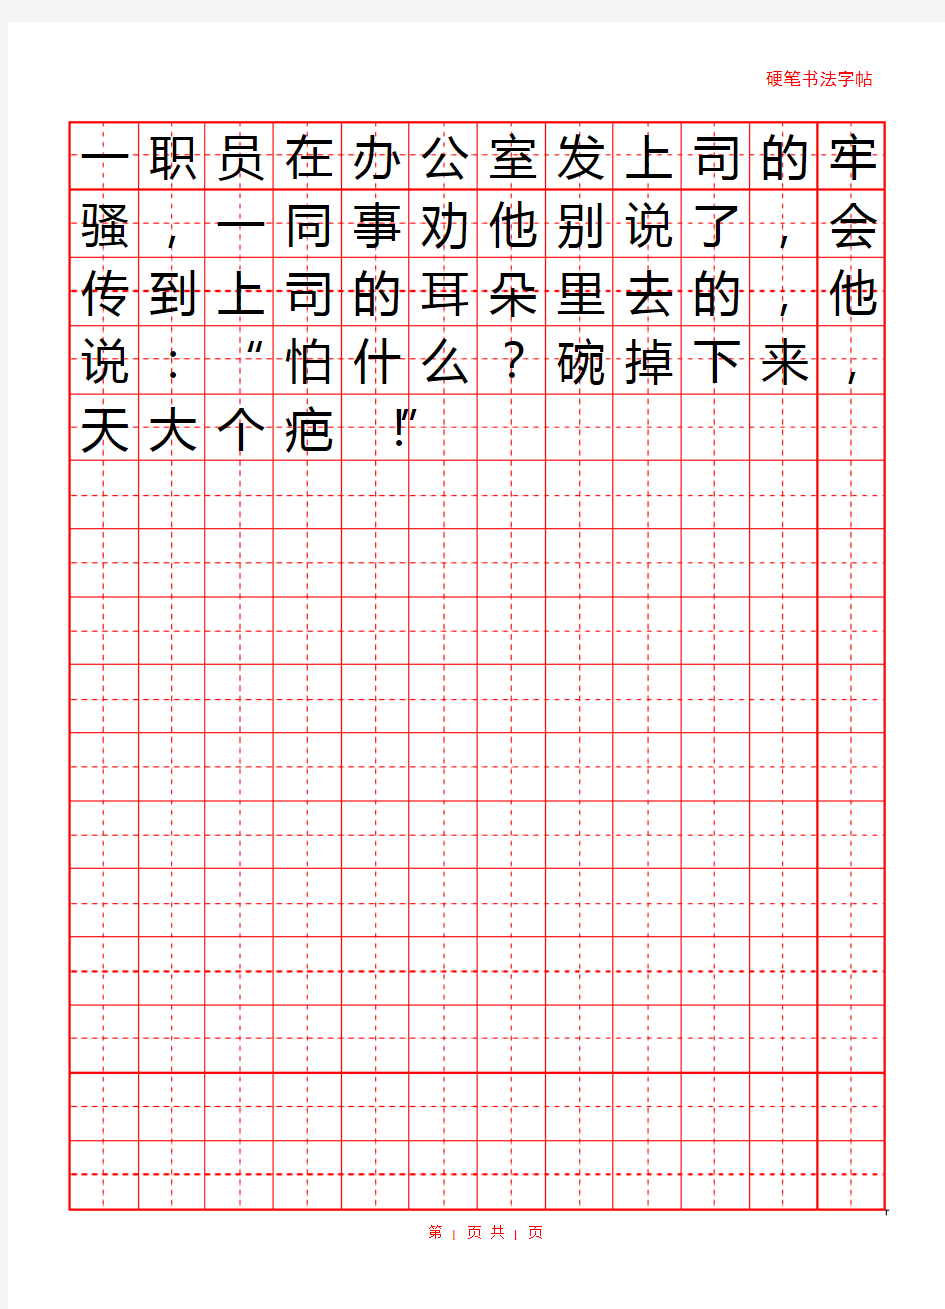 字帖模板 16开纸田字格红格12x16(标准版,直接使用)